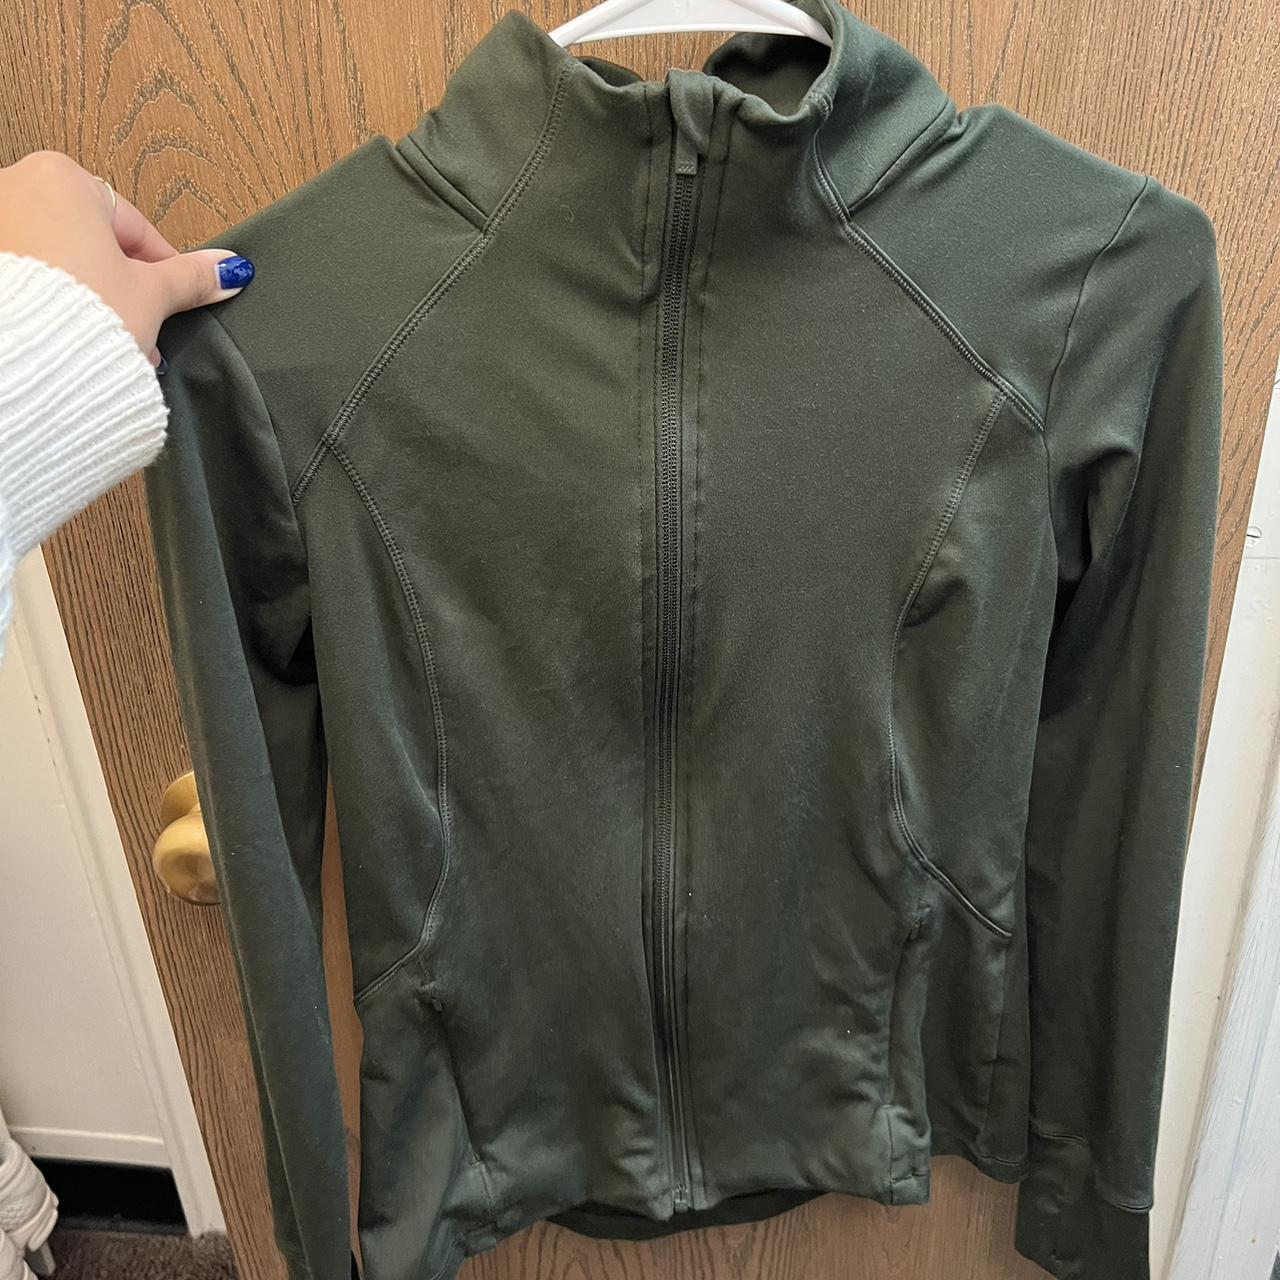 lululemon define jacket dupe, size xs works for size - Depop